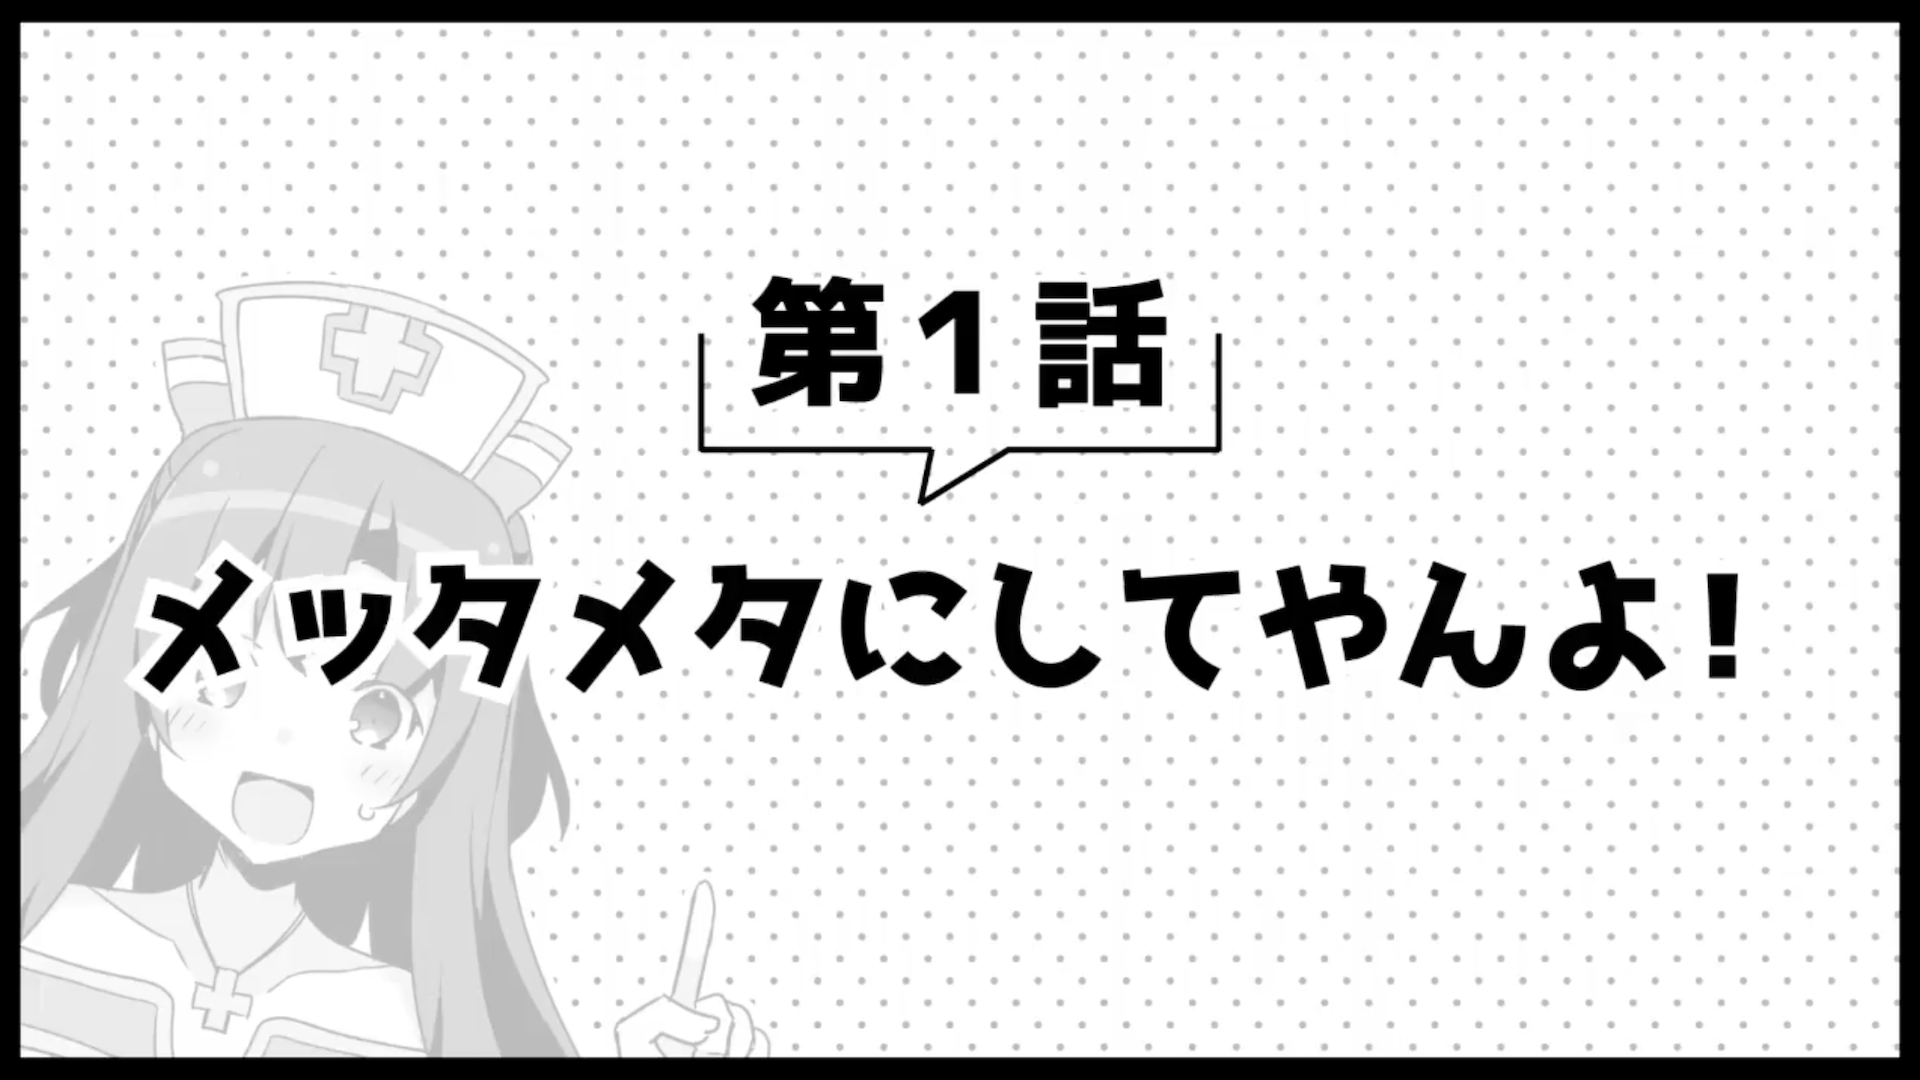 Picture Drama - Season 2 Episode 1, Arifureta Shokugyou de Sekai Saikyou  Wiki